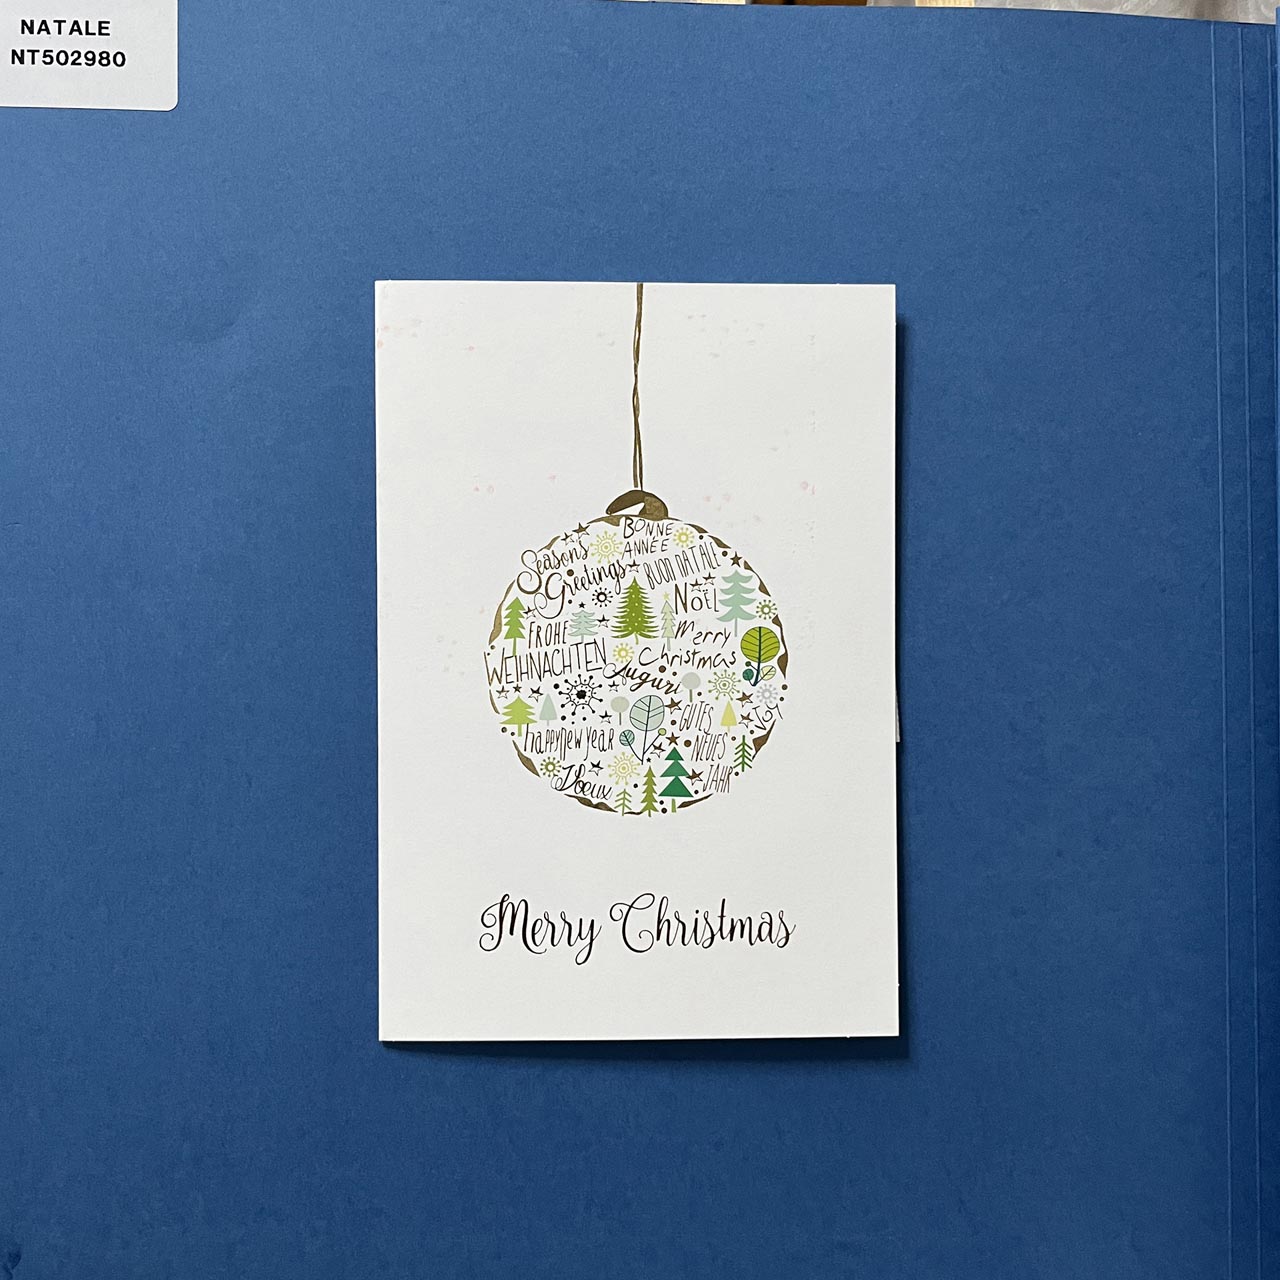 Biglietto natalizio a libretto verticale. In copertina una palla di Natale decorata con particolari natalizi e la scritta ‘Merry Christmas’ a rilievo